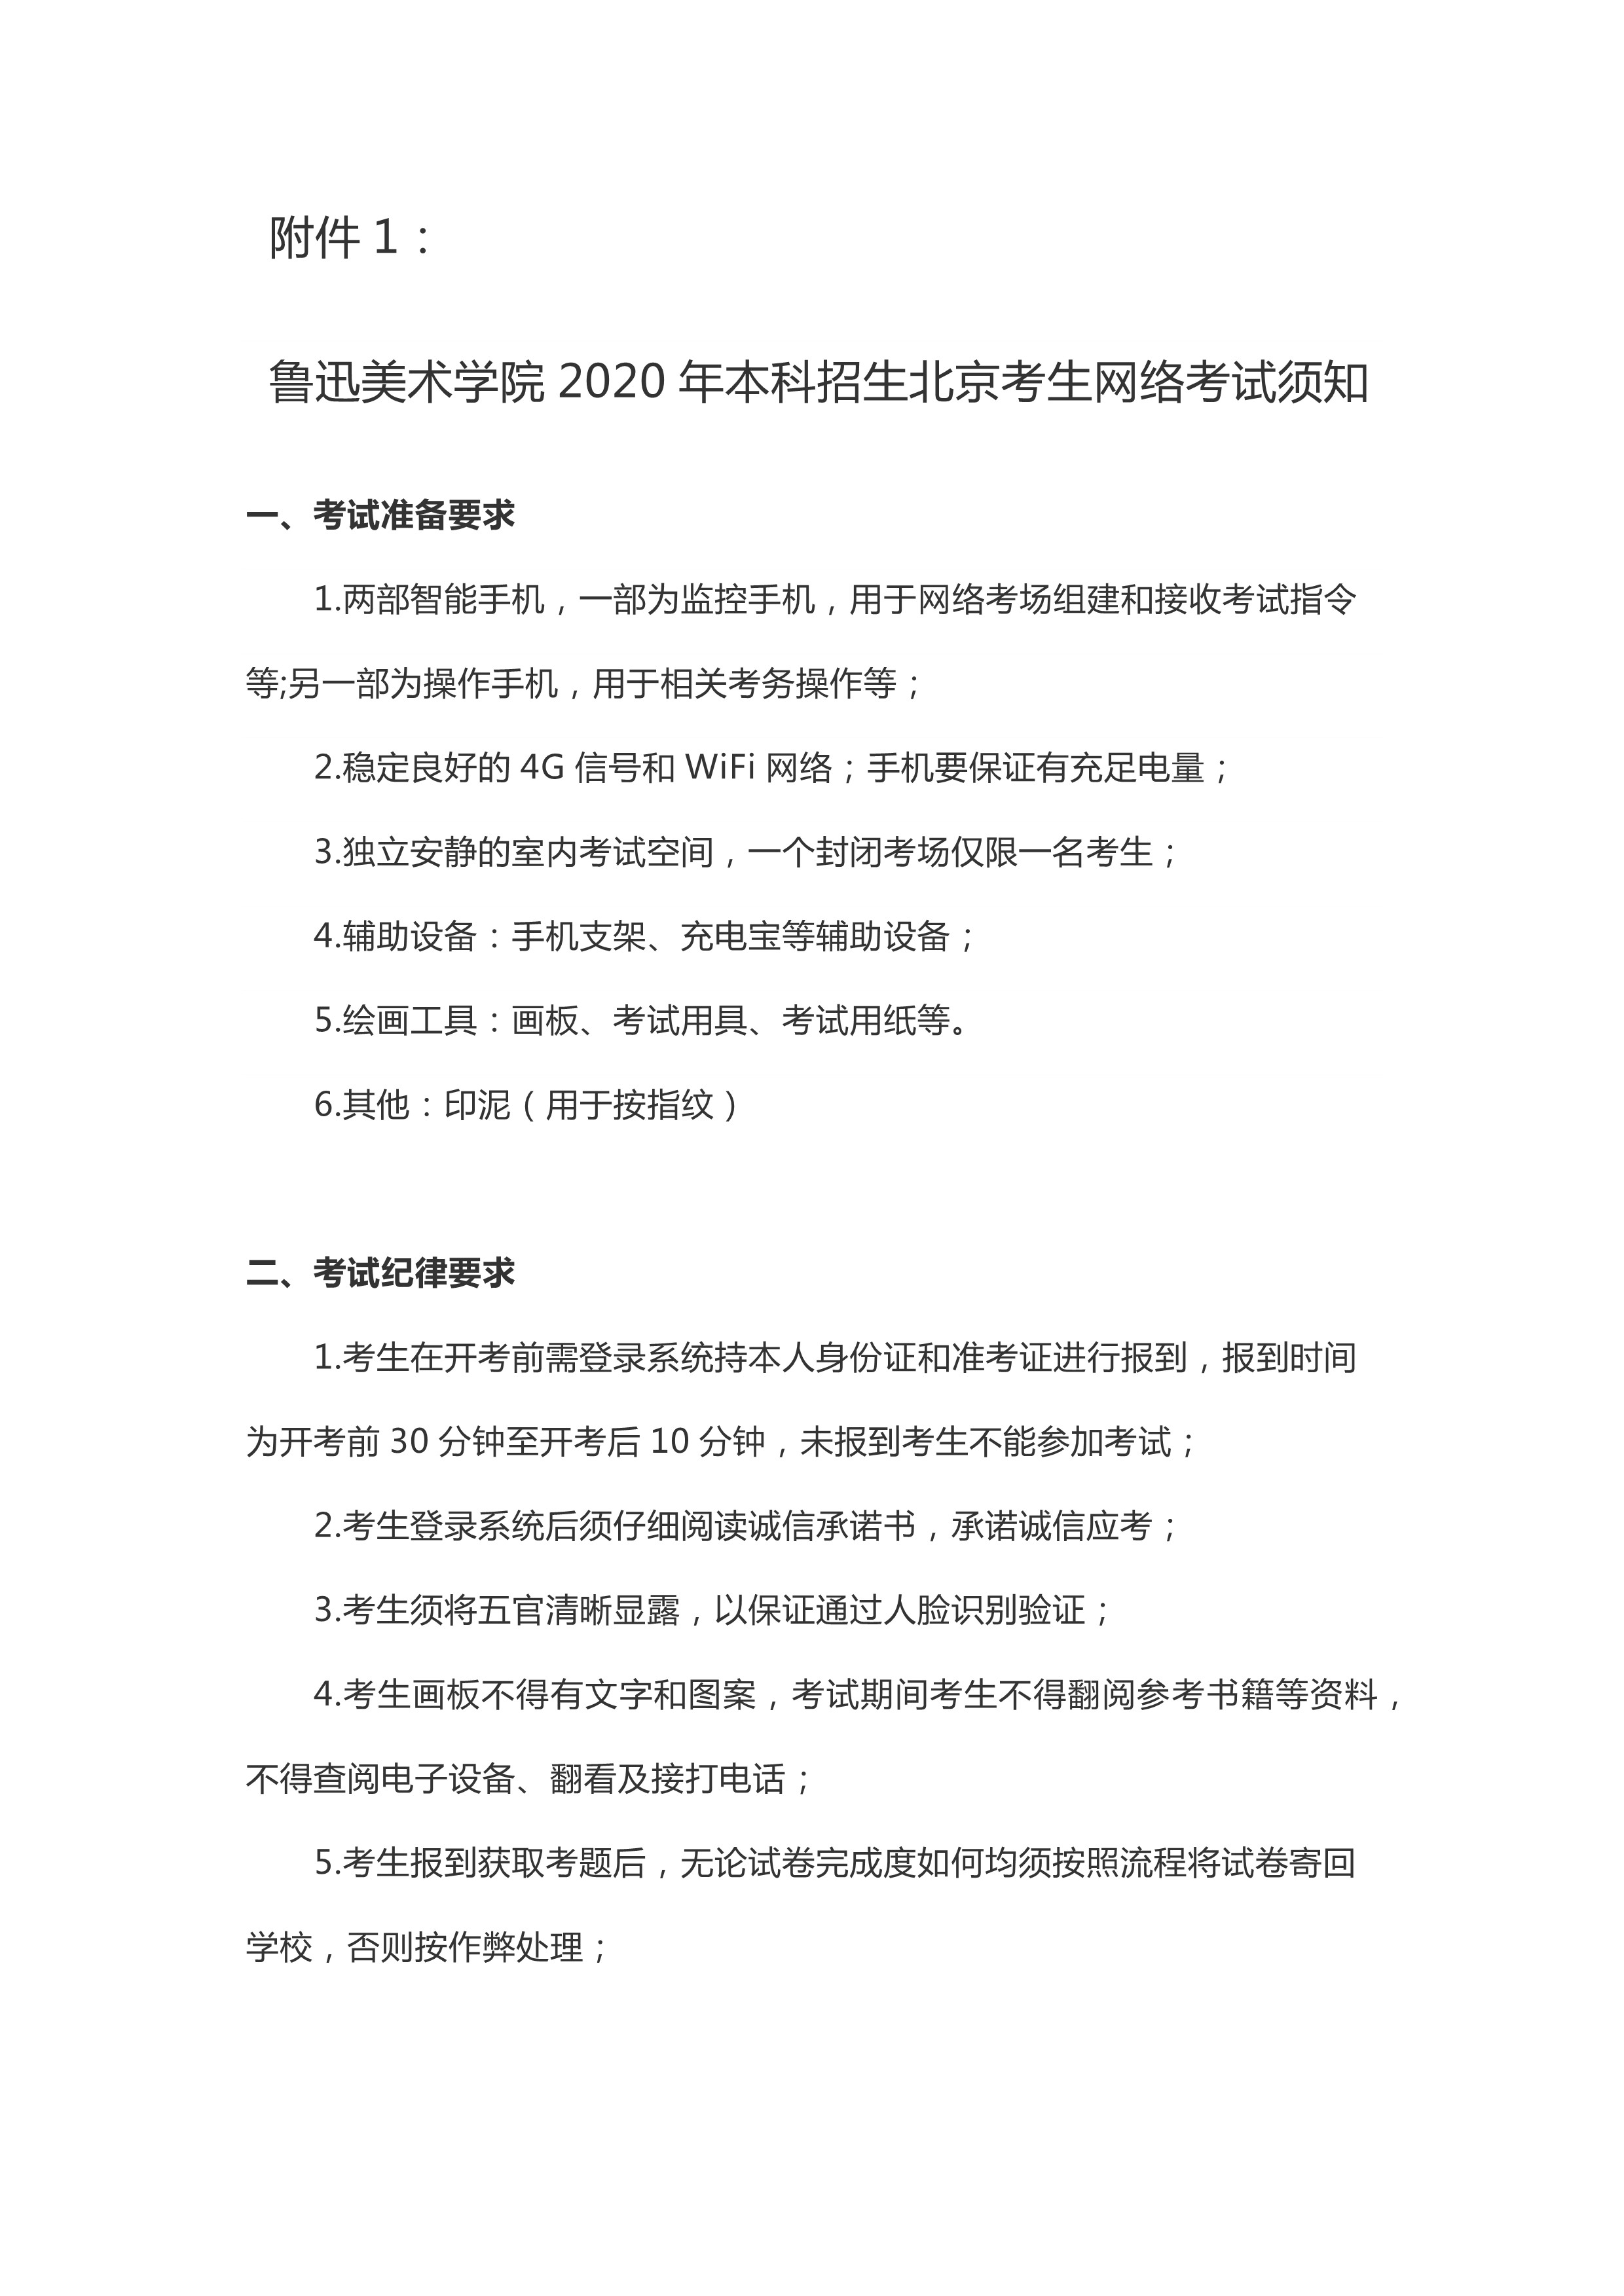 附件1：鲁迅美术学北京考生2020年本科招生专业网络考试须知_1.jpg